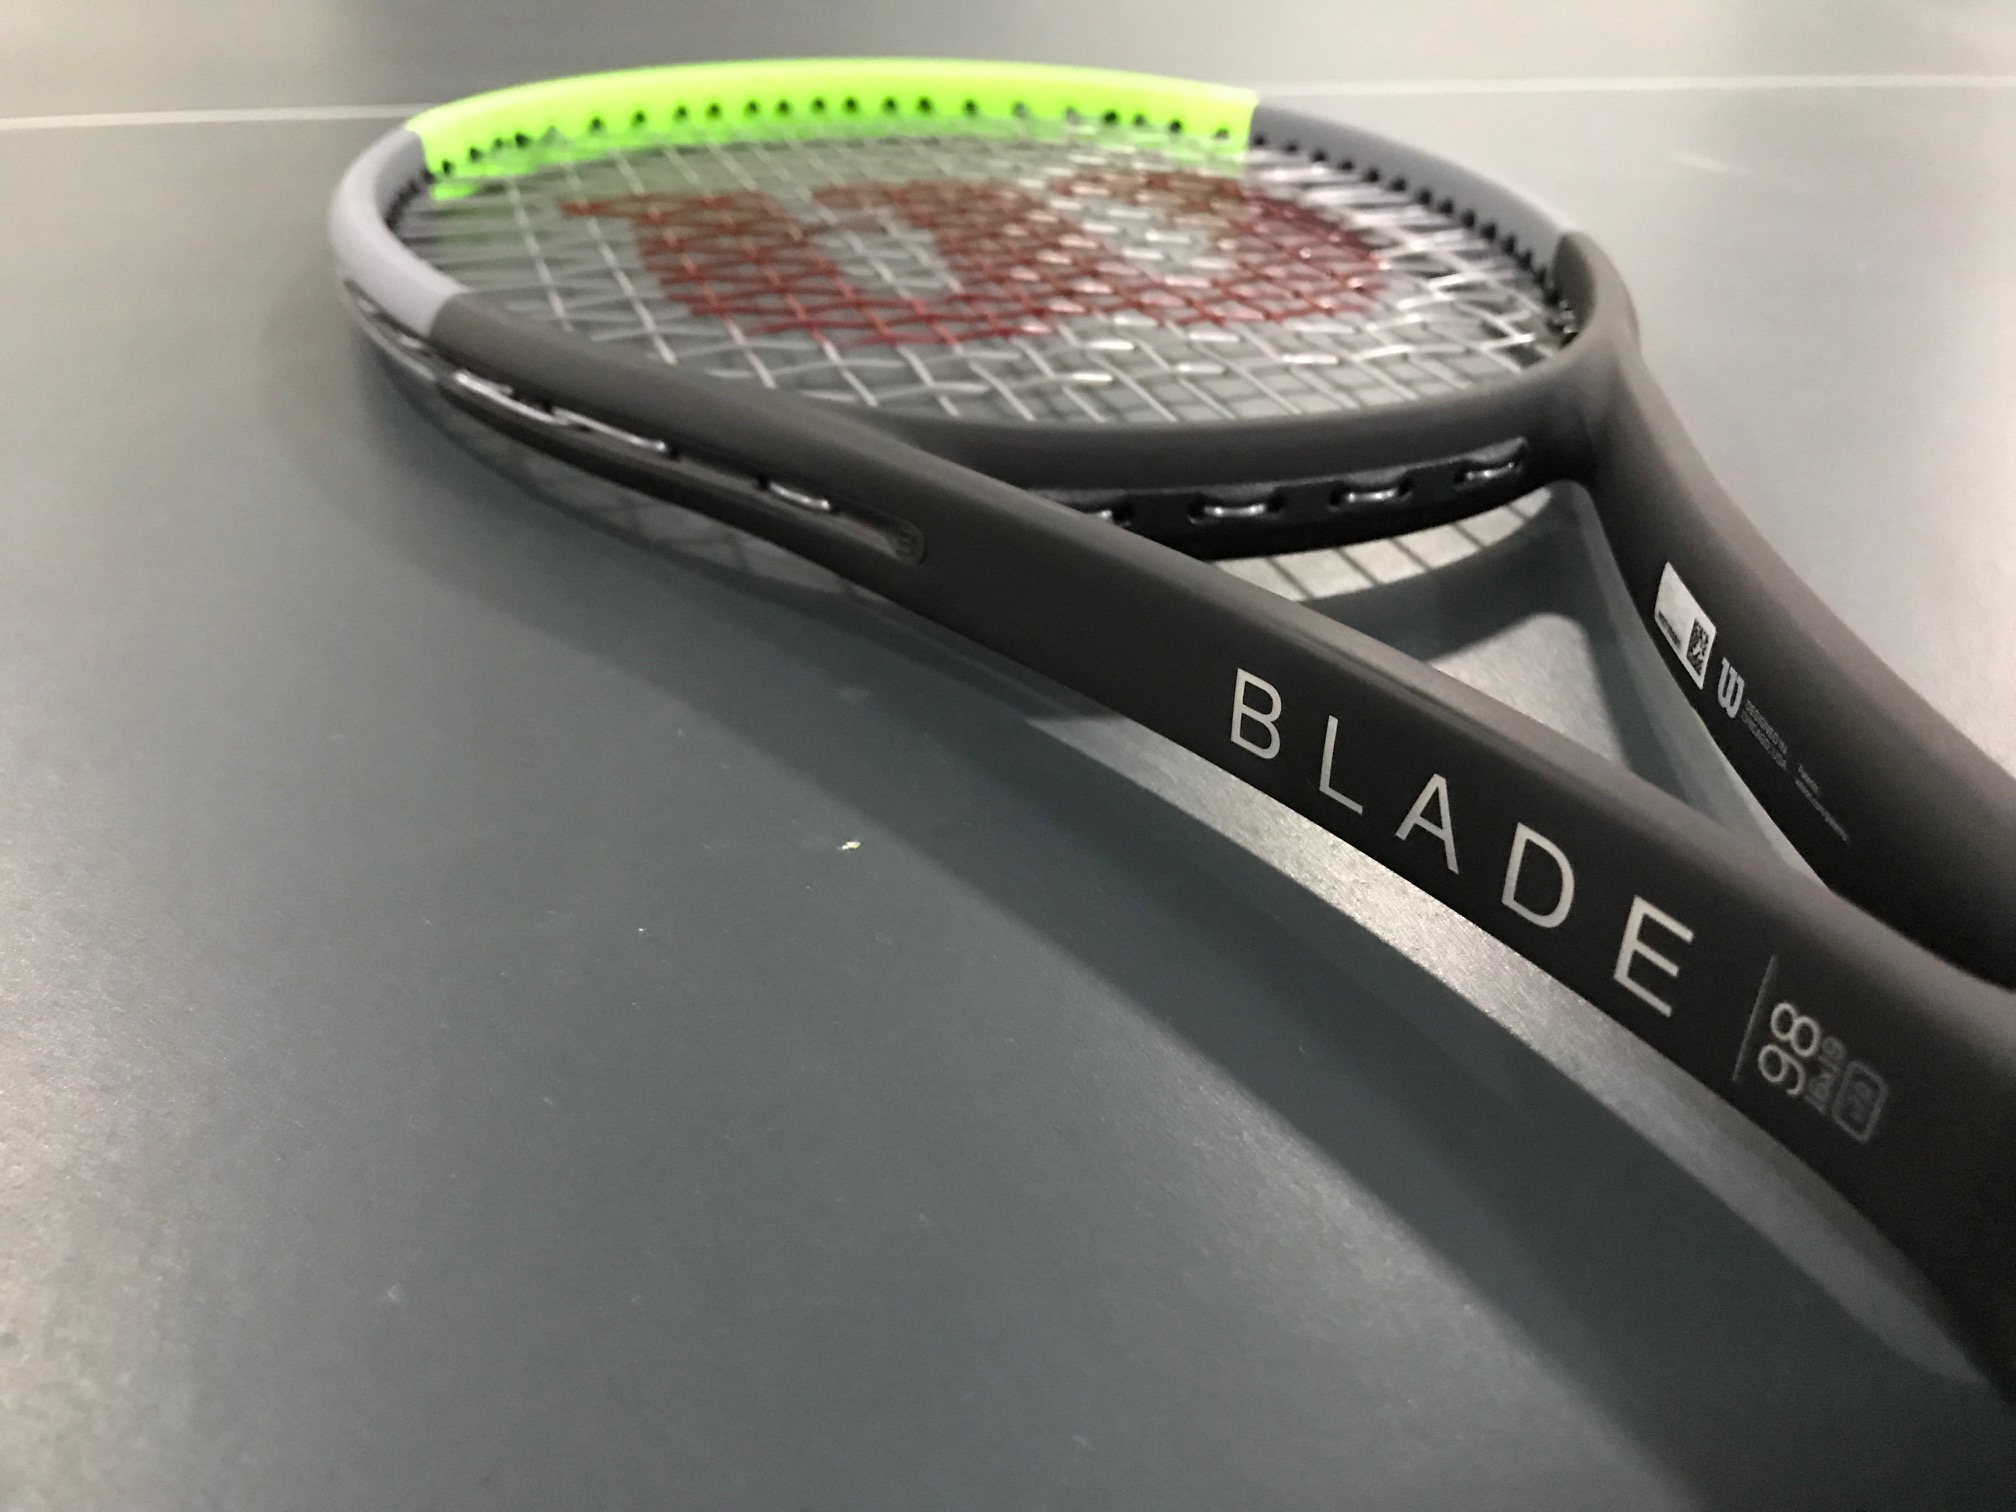 Wilson Blade 98 V7 Racquet Review - Tennisnerd.net